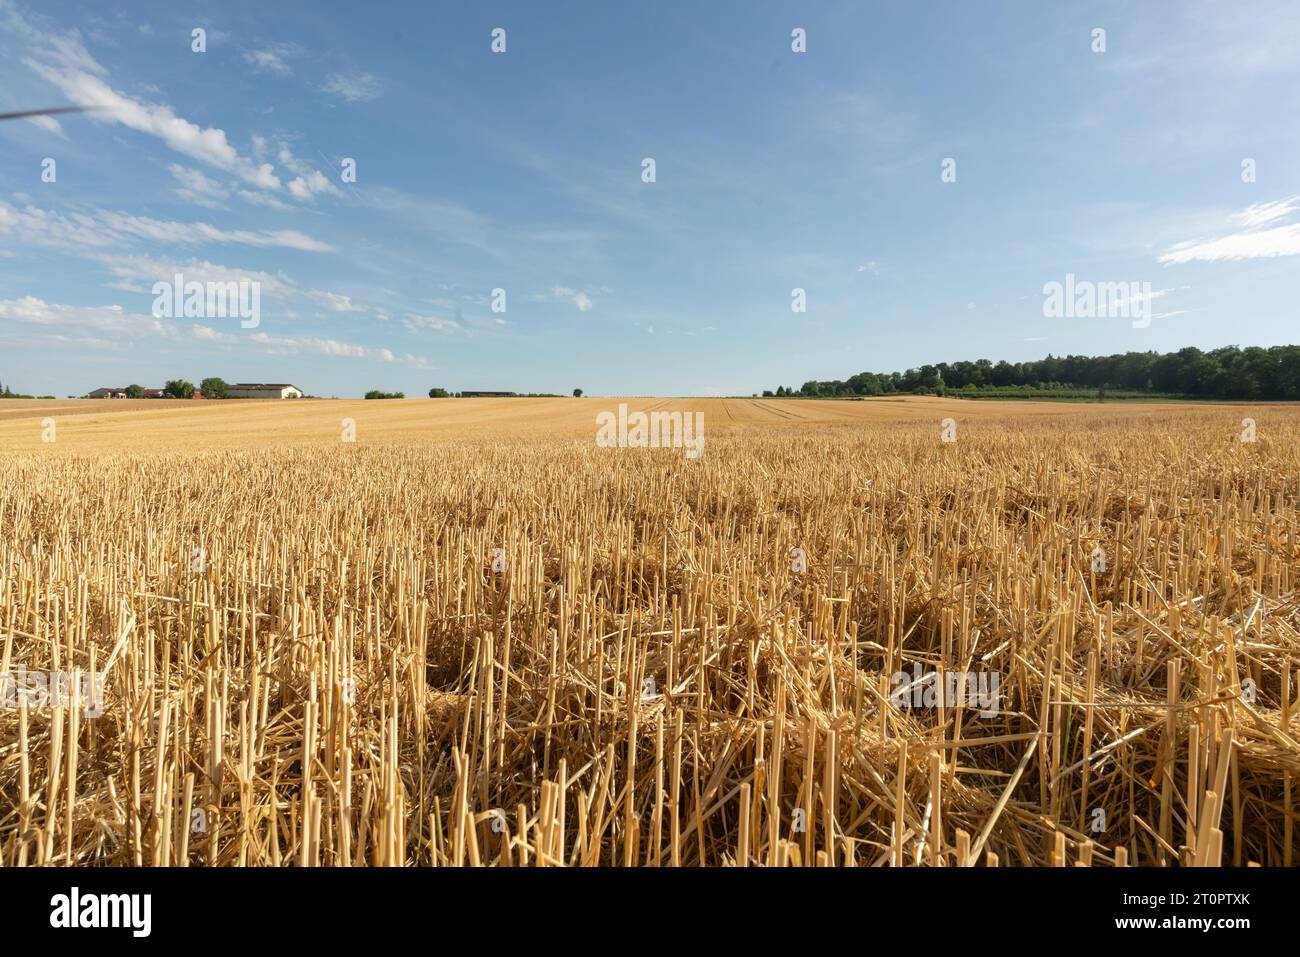 Vue au-dessus du champ de grain fauché avec chaume de plantes à grain dans la zone rurale à la fin de l'été juste avant la récolte Banque D'Images